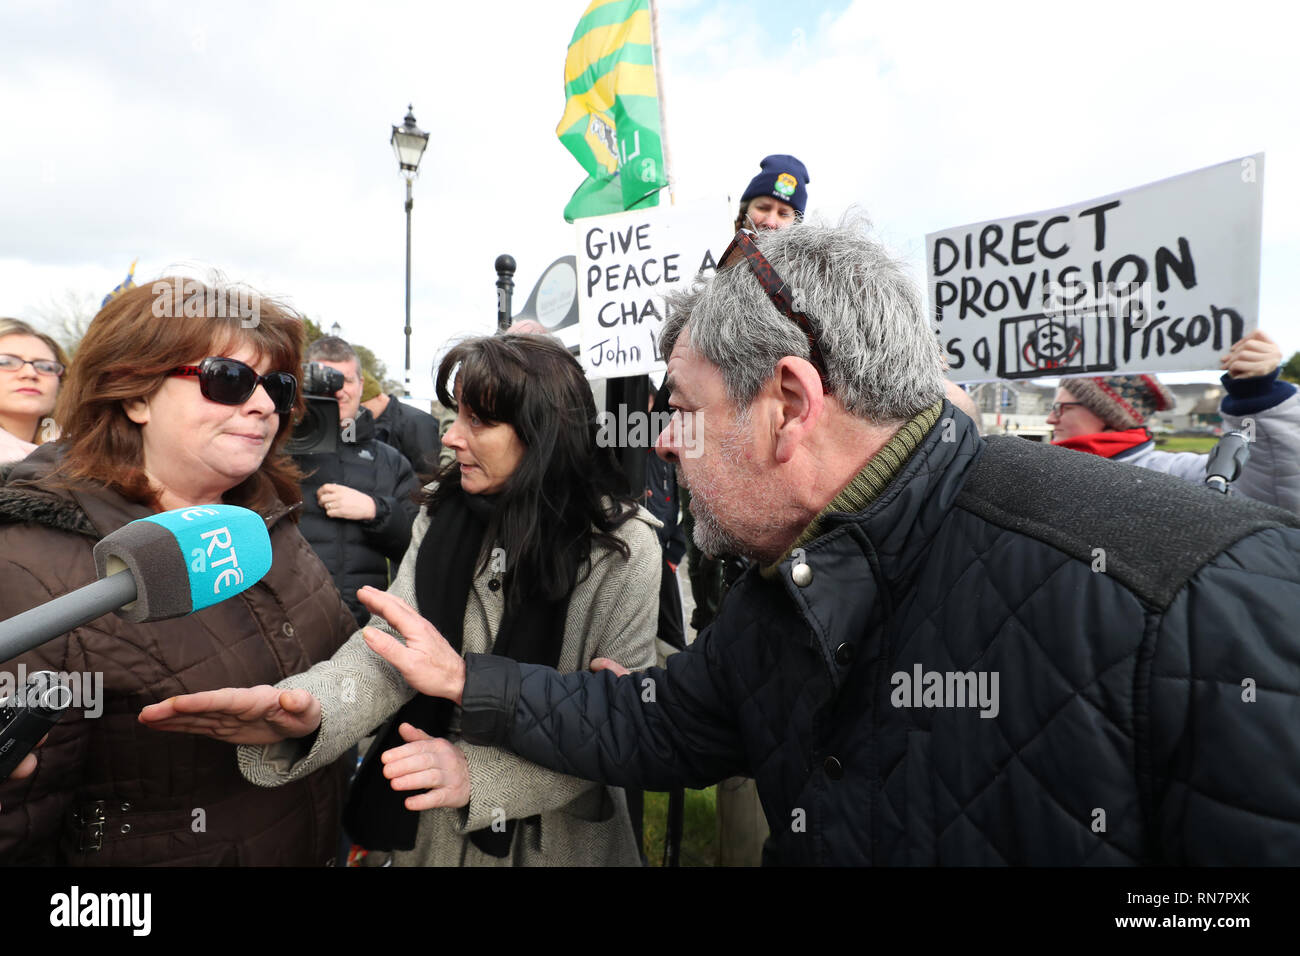 Pro et anti-réfugiés protestataires s'affrontent lors d'un rassemblement anti-racisme intitulé 'Love Rooskey : Non au racisme : demandeurs d'asile", la bienvenue en Rooskey, Irlande. Banque D'Images